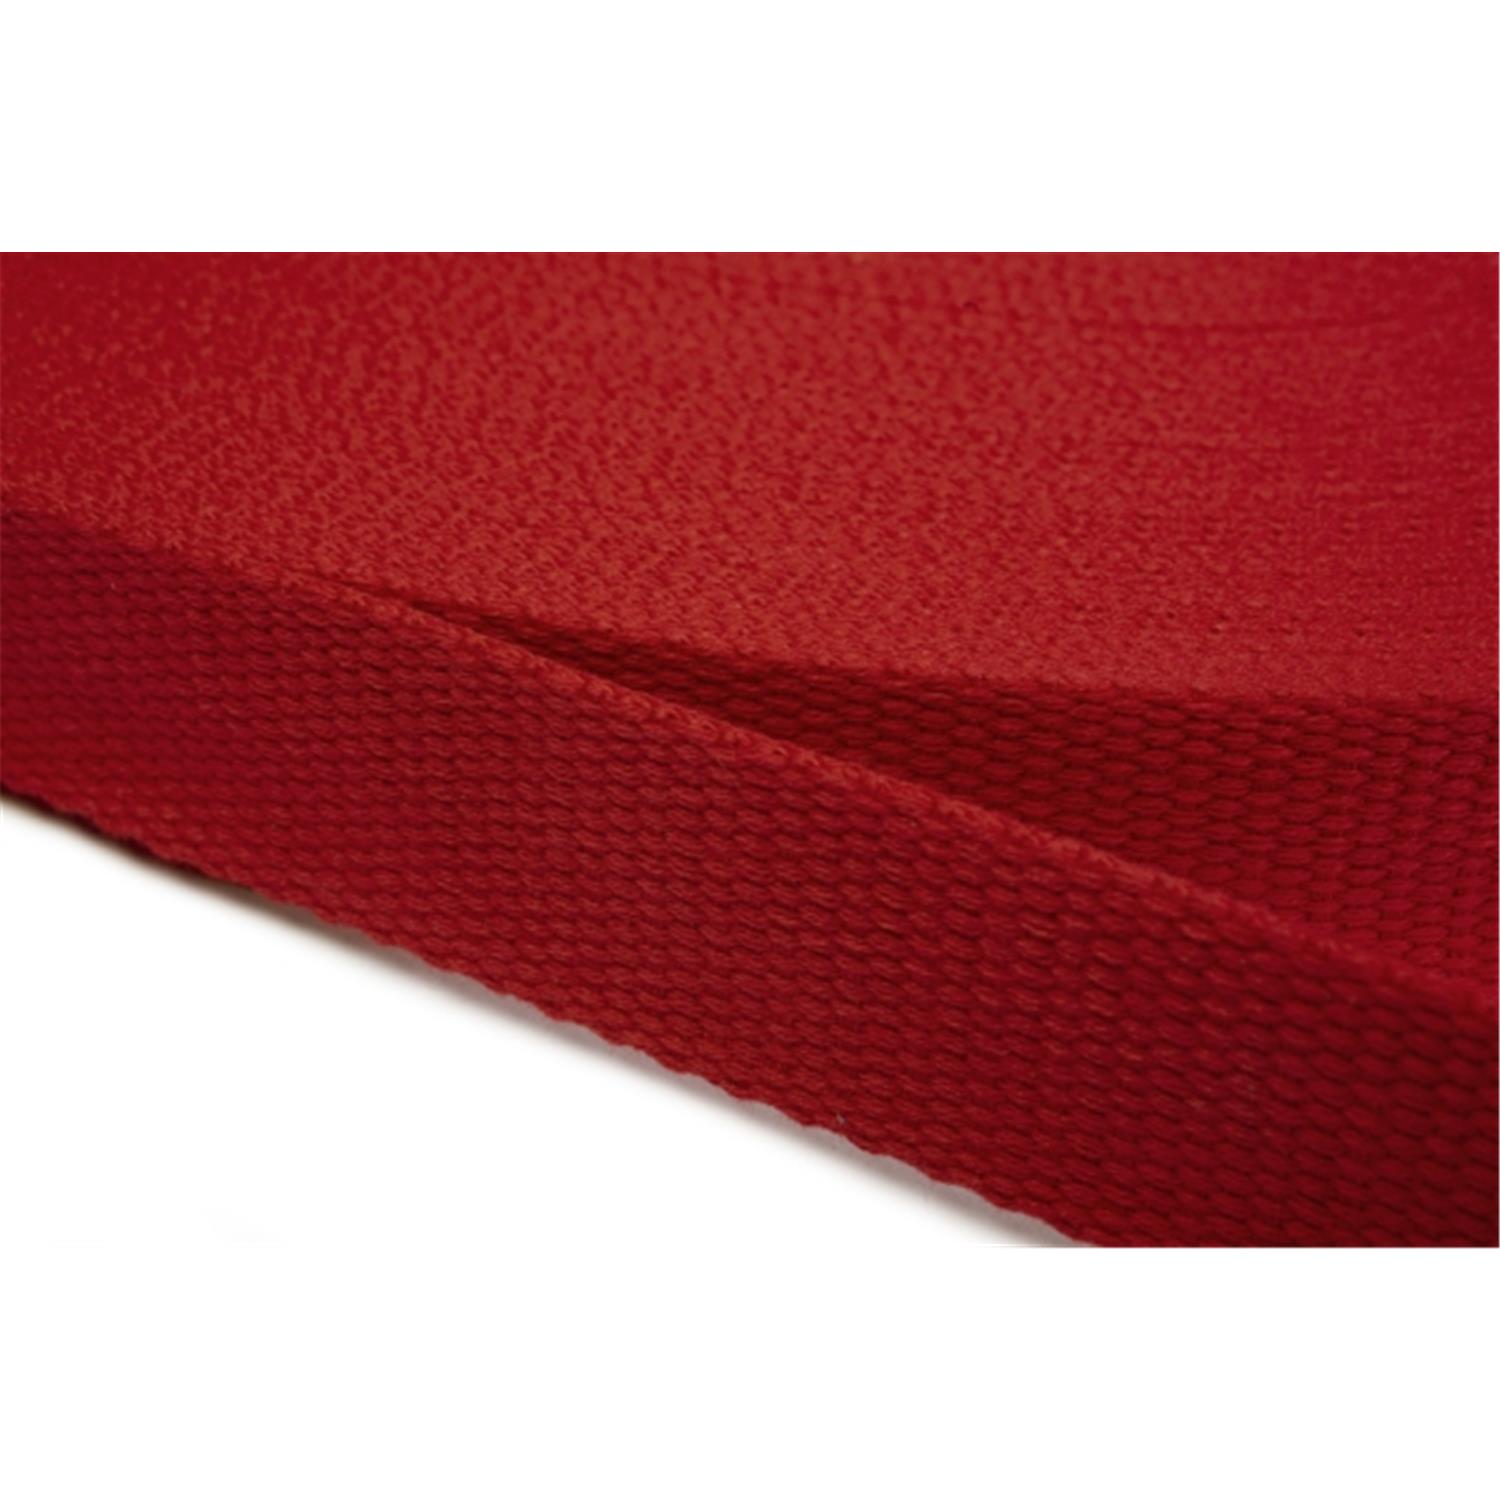 Gurtband aus Baumwolle 25mm in 20 Farben 10 - rot 6 Meter